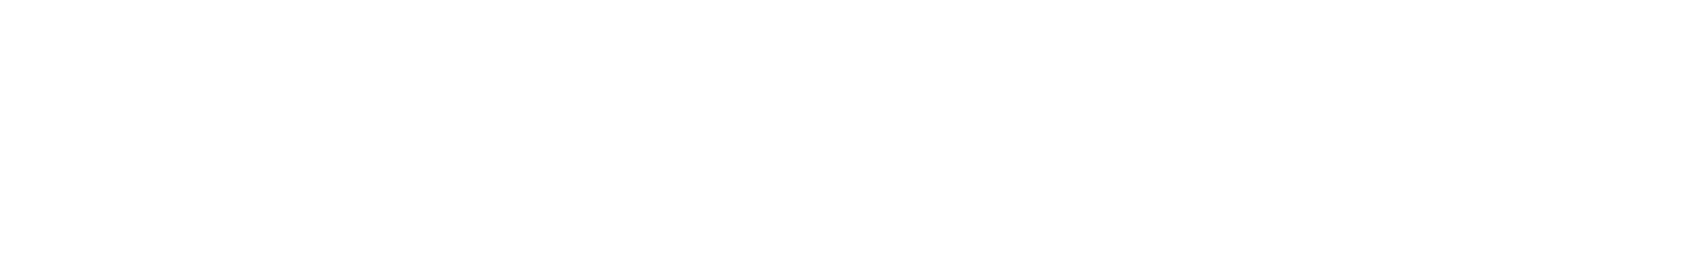 First Advantage logo large for dark backgrounds (transparent PNG)